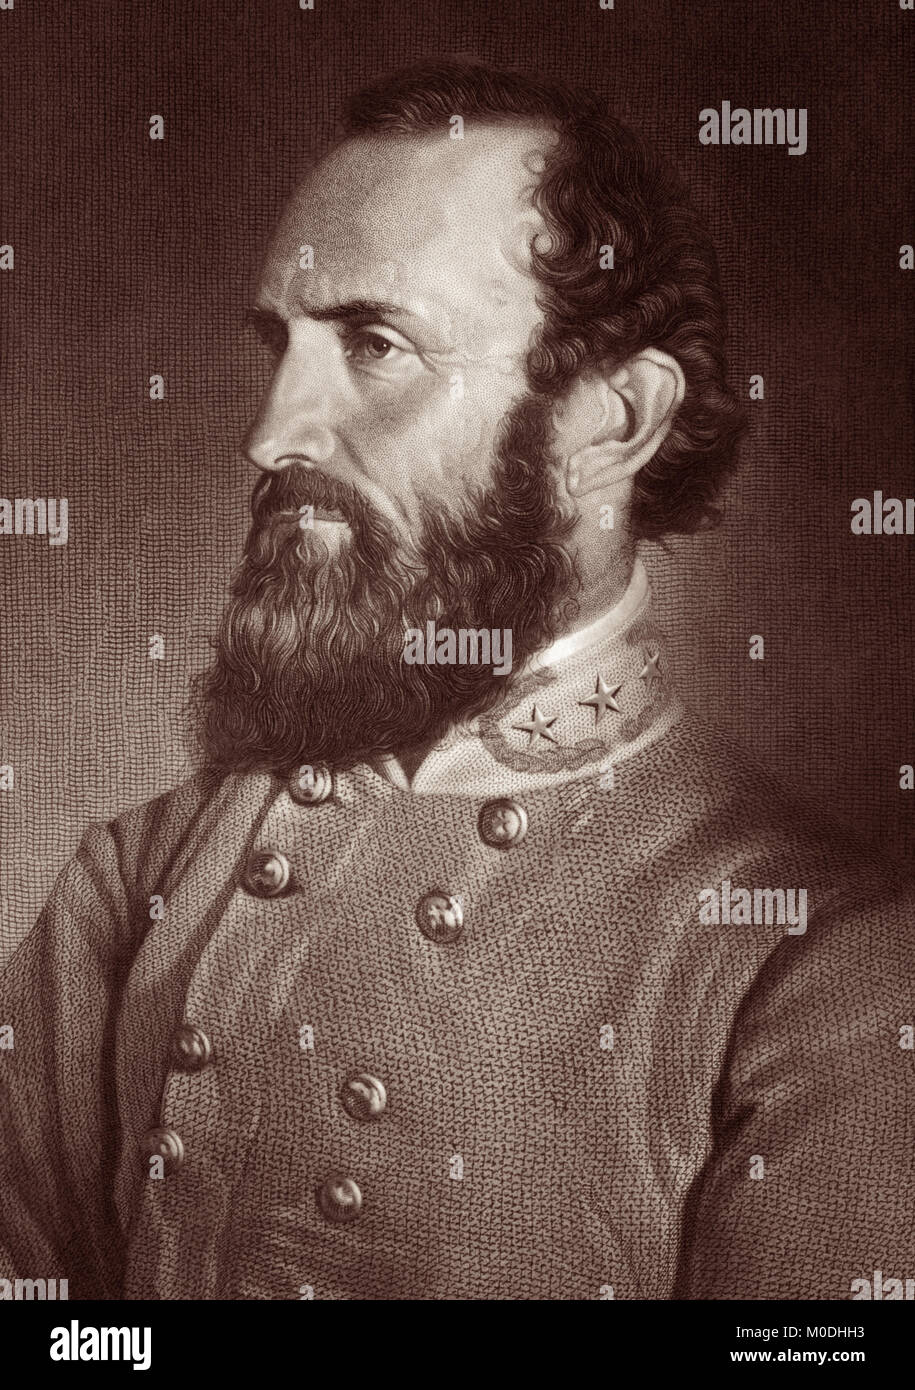 Thomas Jonathan Jackson tonewall' (1824 - 1863) war ein Lieutenant General der Konföderierten Staaten von Amerika (CSA) während des Amerikanischen Bürgerkrieges, und die bekanntesten Confederate Commander nach General Robert E. Lee. (Gravur von einem Foto Portrait, 26. April 1869, sieben Tage, bevor er in der Schlacht von Chancellorsville verwundet.) Stockfoto